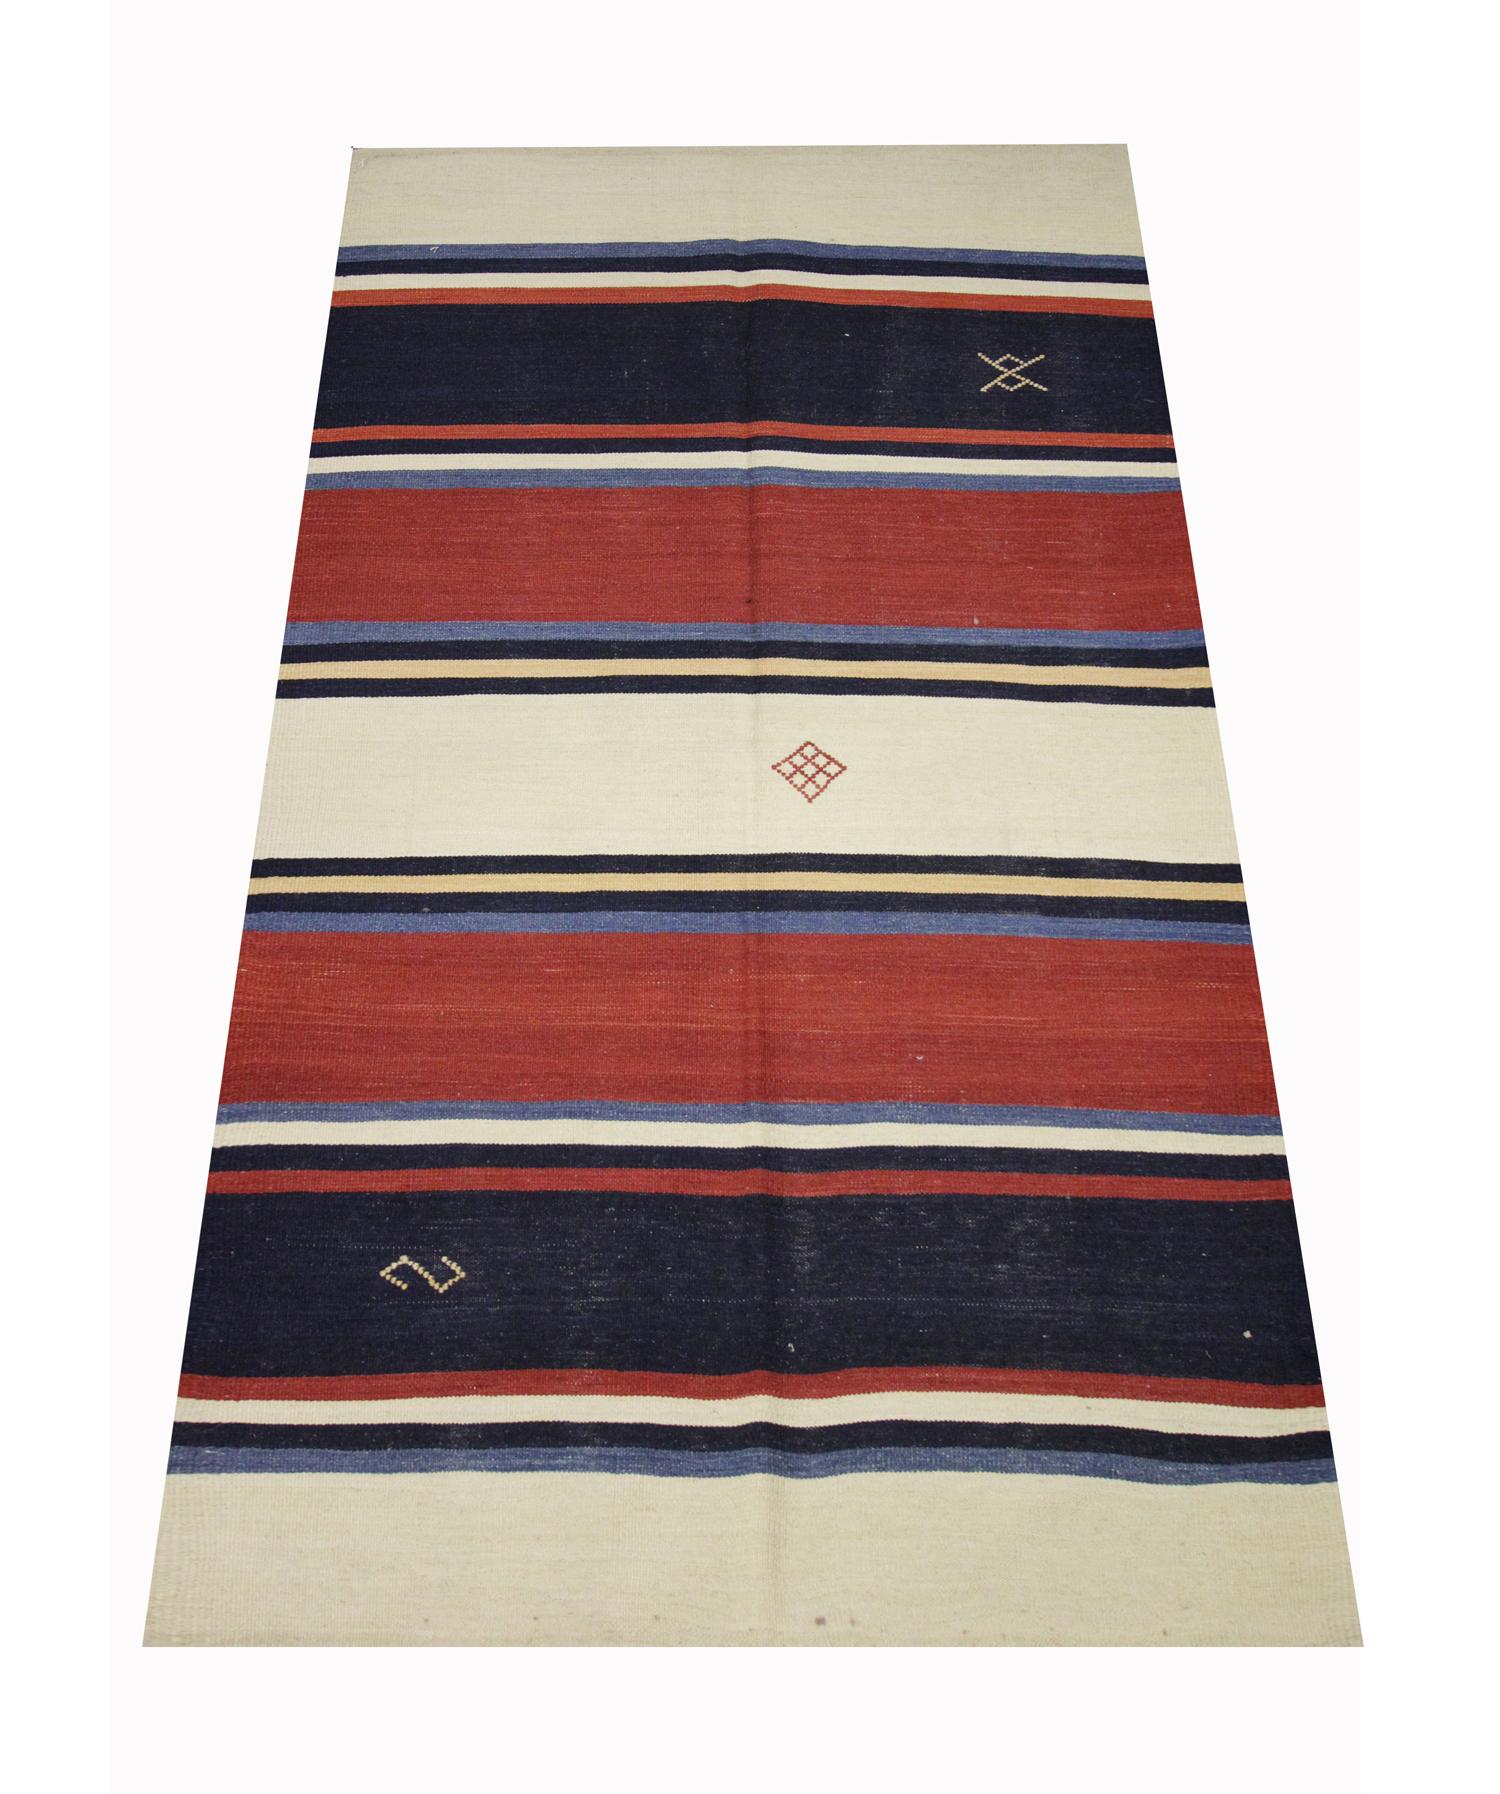 Cet élégant tapis en laine est un Kilim moderne tissé avec un design de rayures contemporain avec des motifs tribaux tissés dans les rayures. Les couleurs et le motif contemporains de cette pièce en font un tapis d'accent parfait pour tout espace